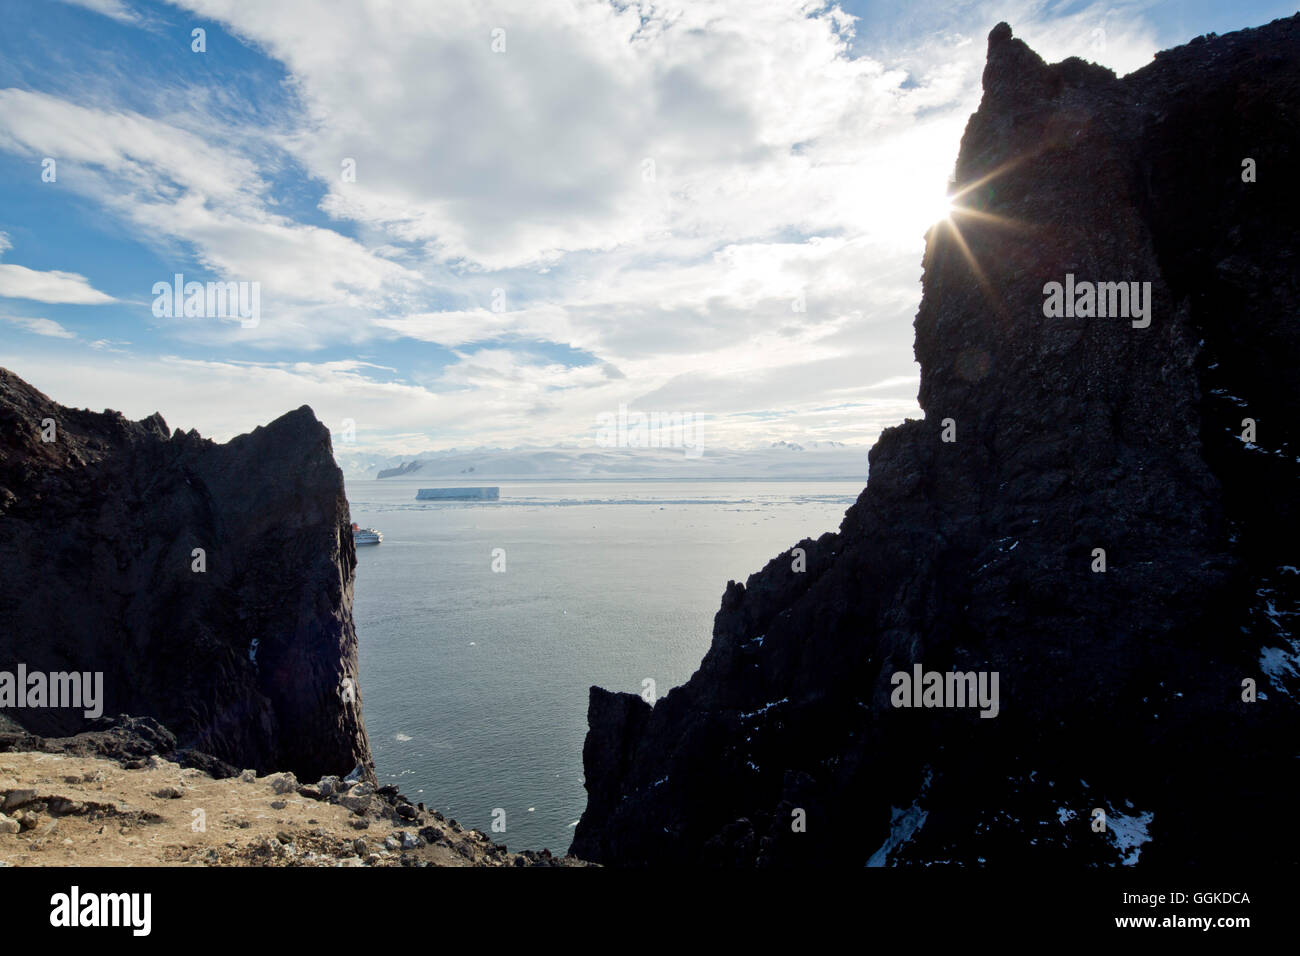 Felsigen Steilküste von vulkanischen Ursprungs mit Meer Blick, Besitz Insel, Antarktis Stockfoto